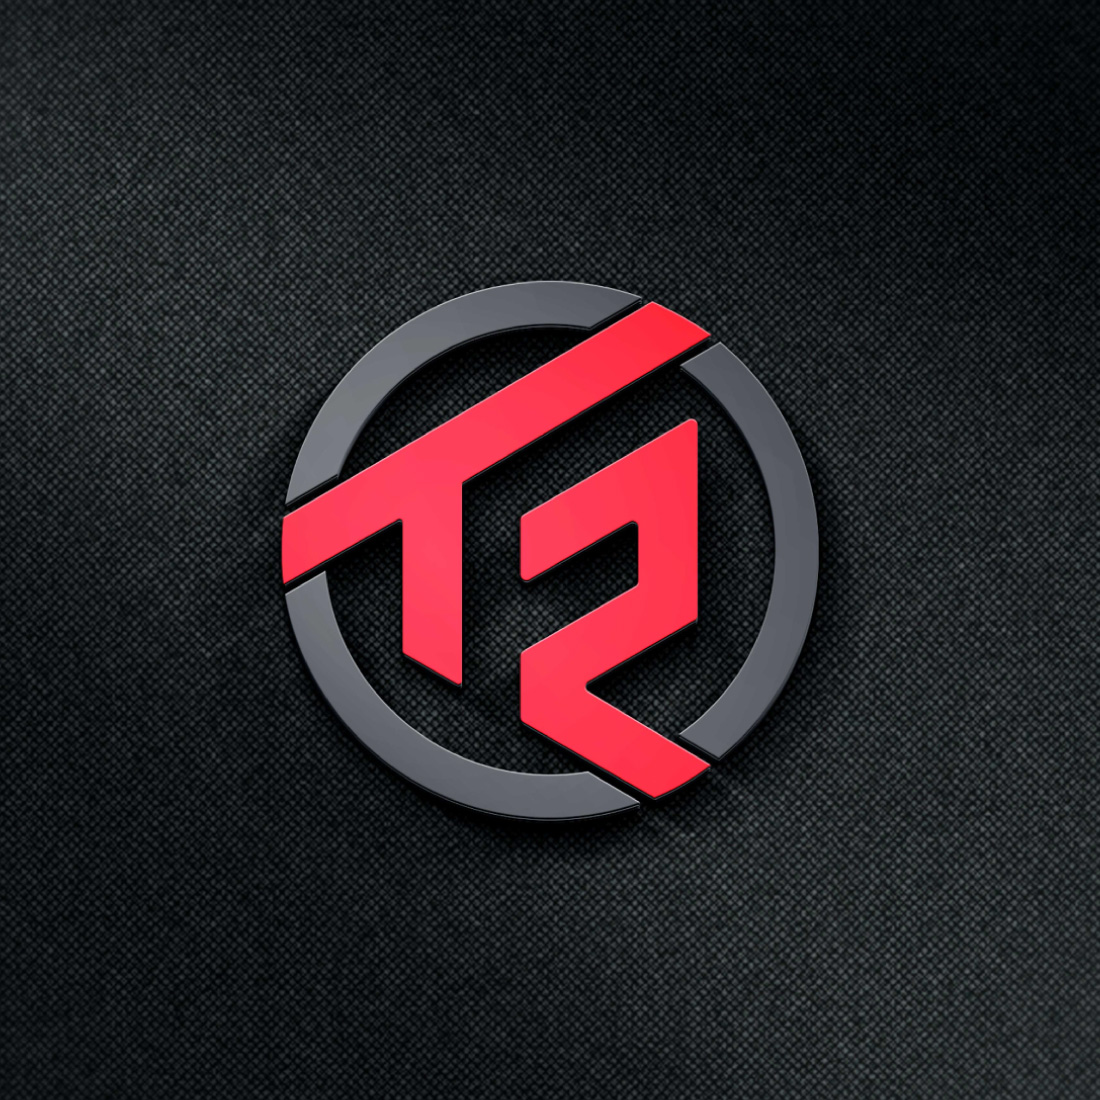 TR logo Design preview image.